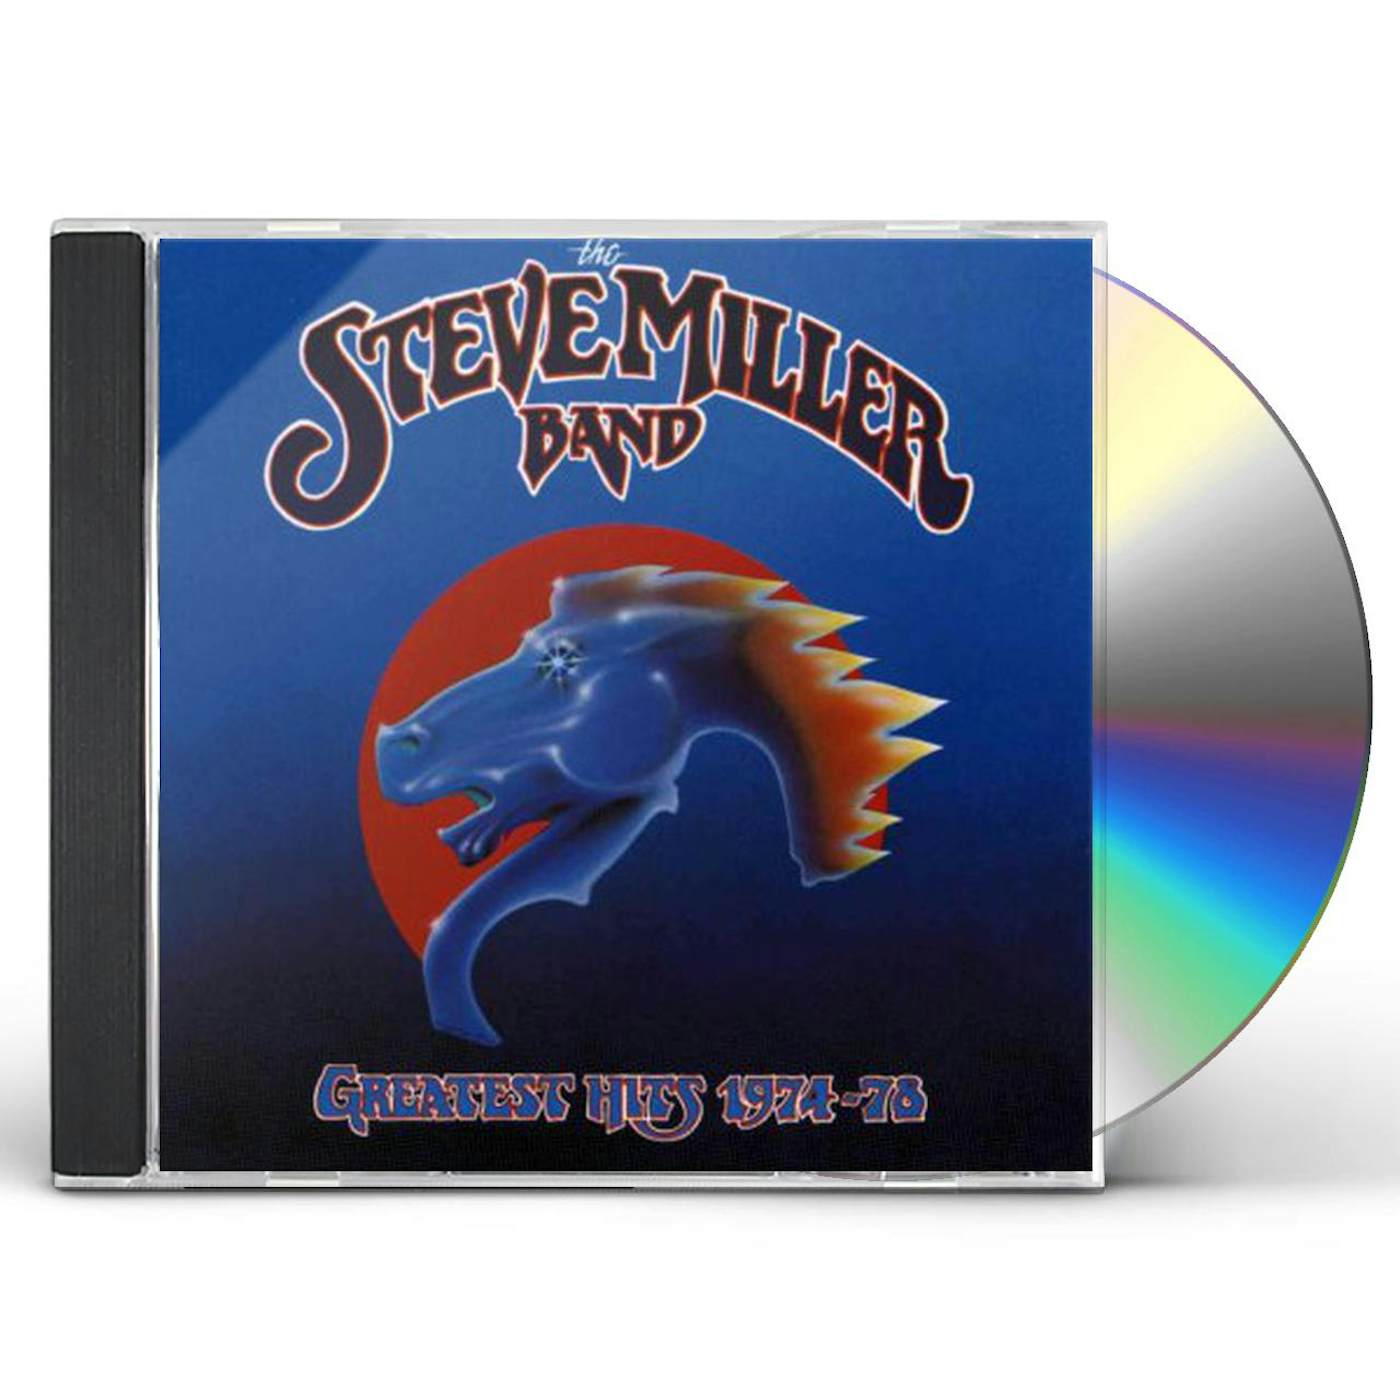 Steve Miller Band GREATEST HITS: 1974-78 CD